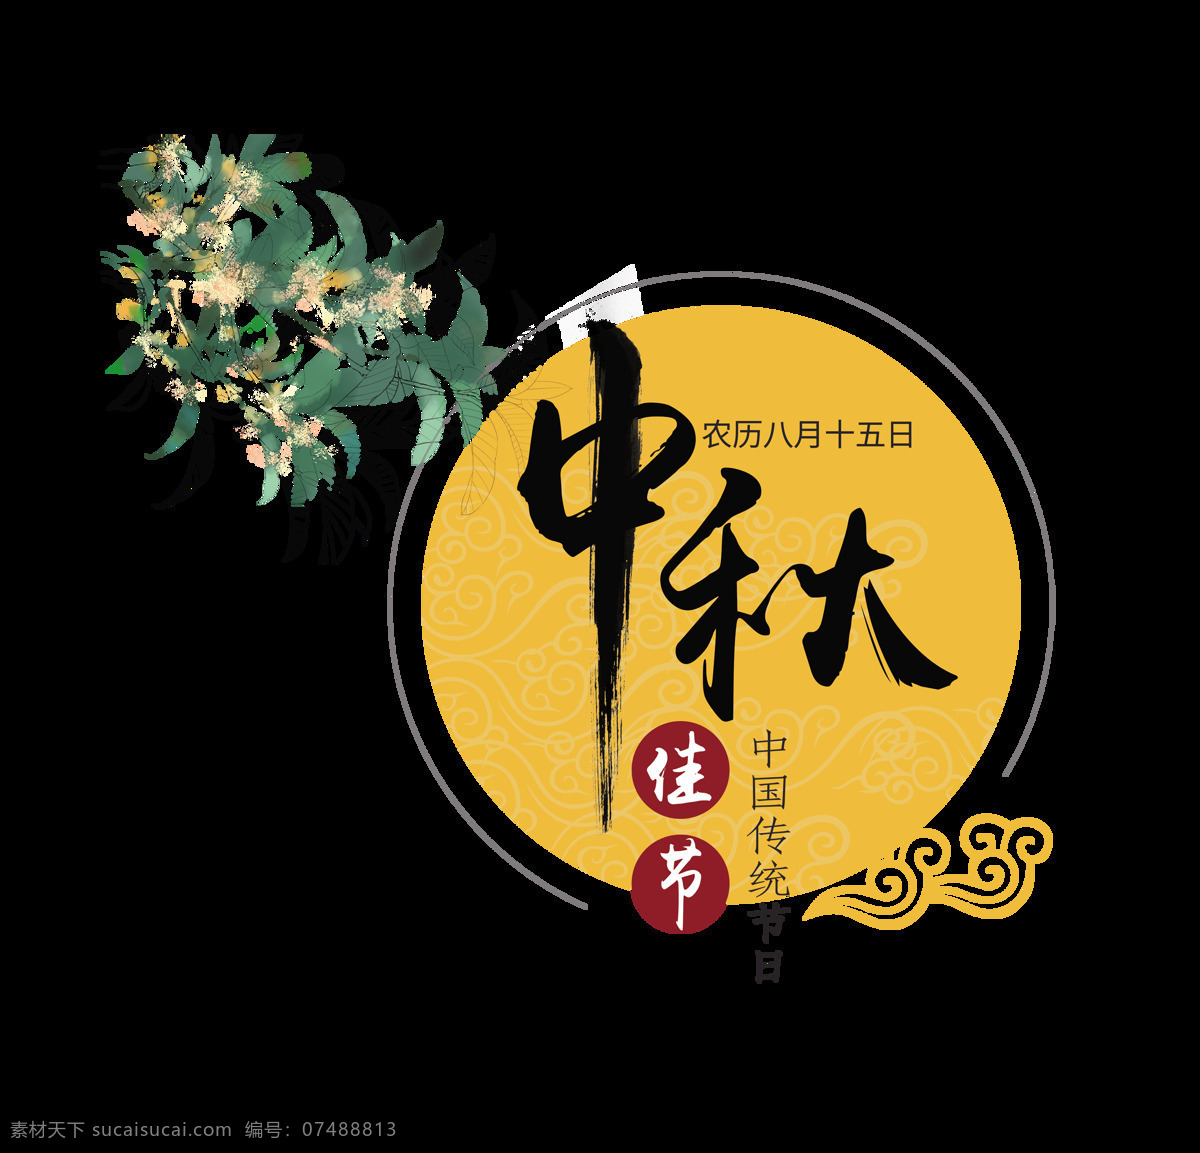 中秋 佳节 八月 十 五 艺术 字 中国风 古典 广告 宣传 促销 节日 古风 海报 素材元素